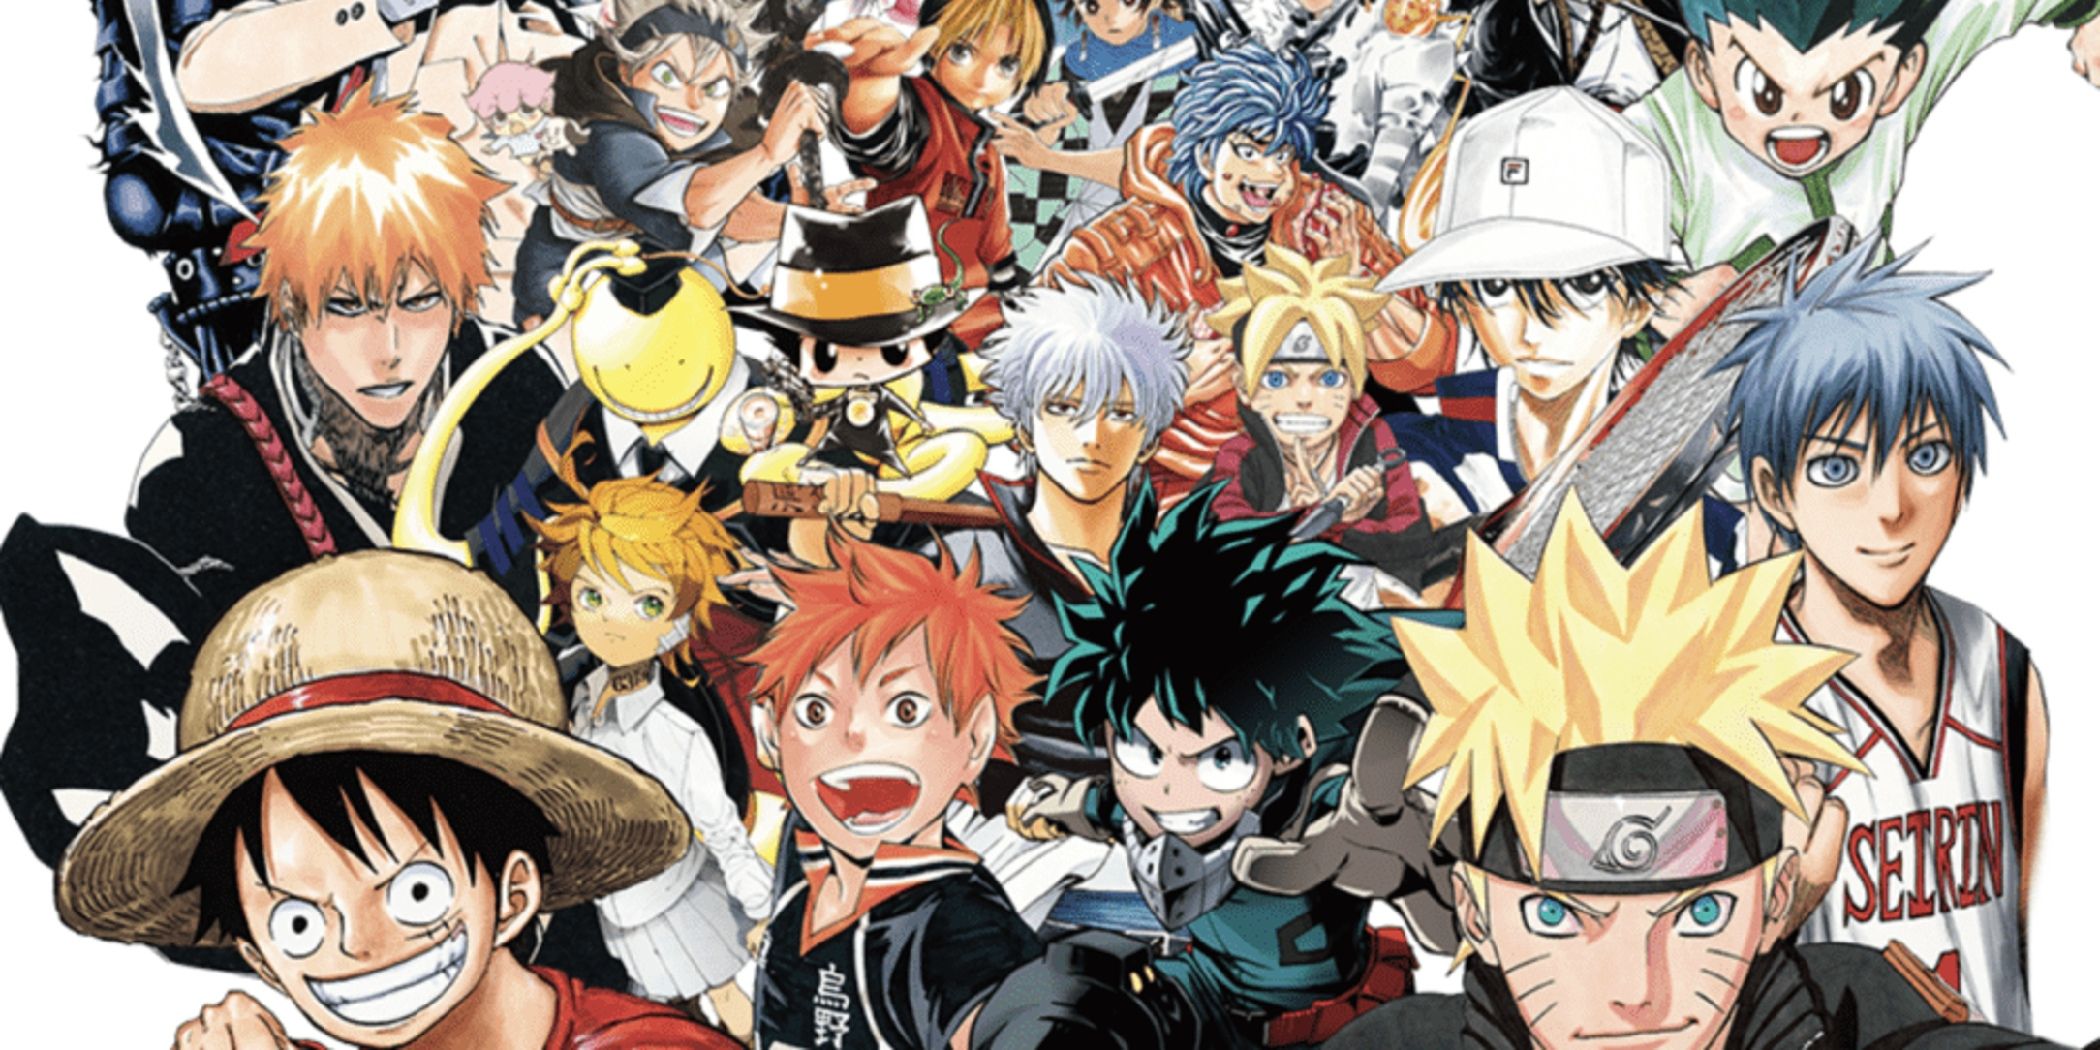 Colagem semanal de mangás da Shonen Jump com protagonistas principais de muitas das séries mais populares da revista.